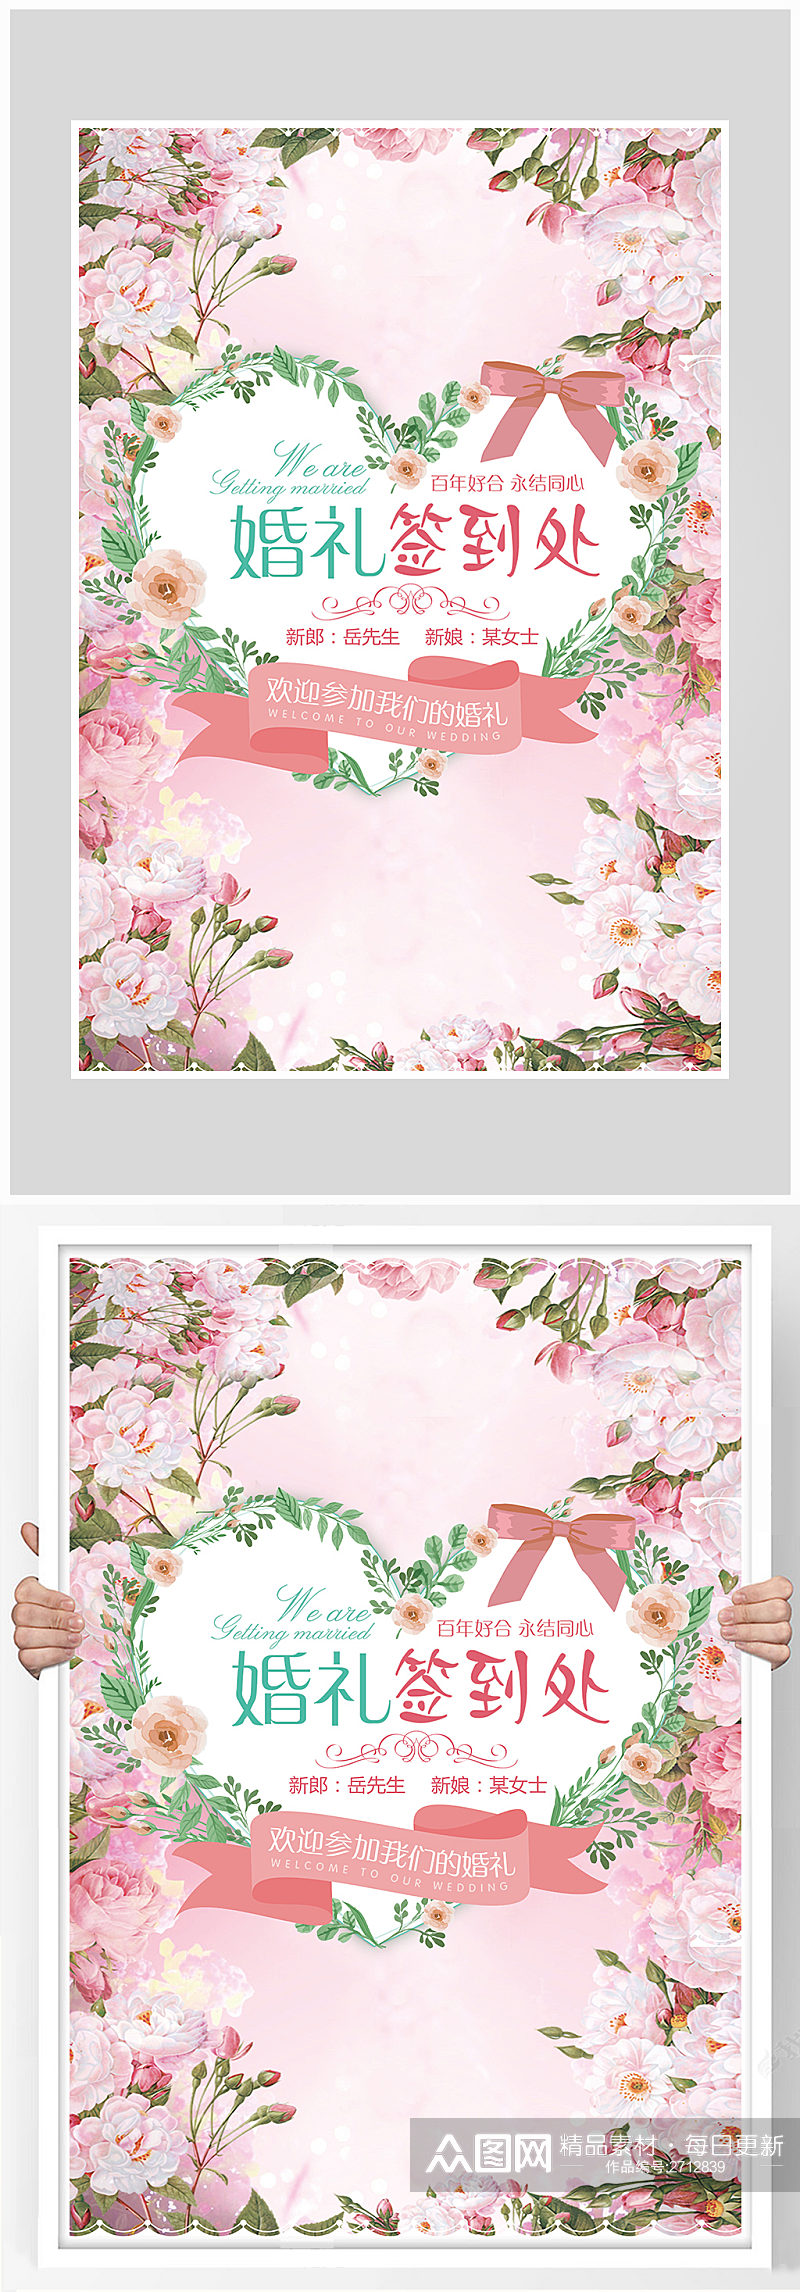 粉色唯美花卉婚礼签到处海报设计素材